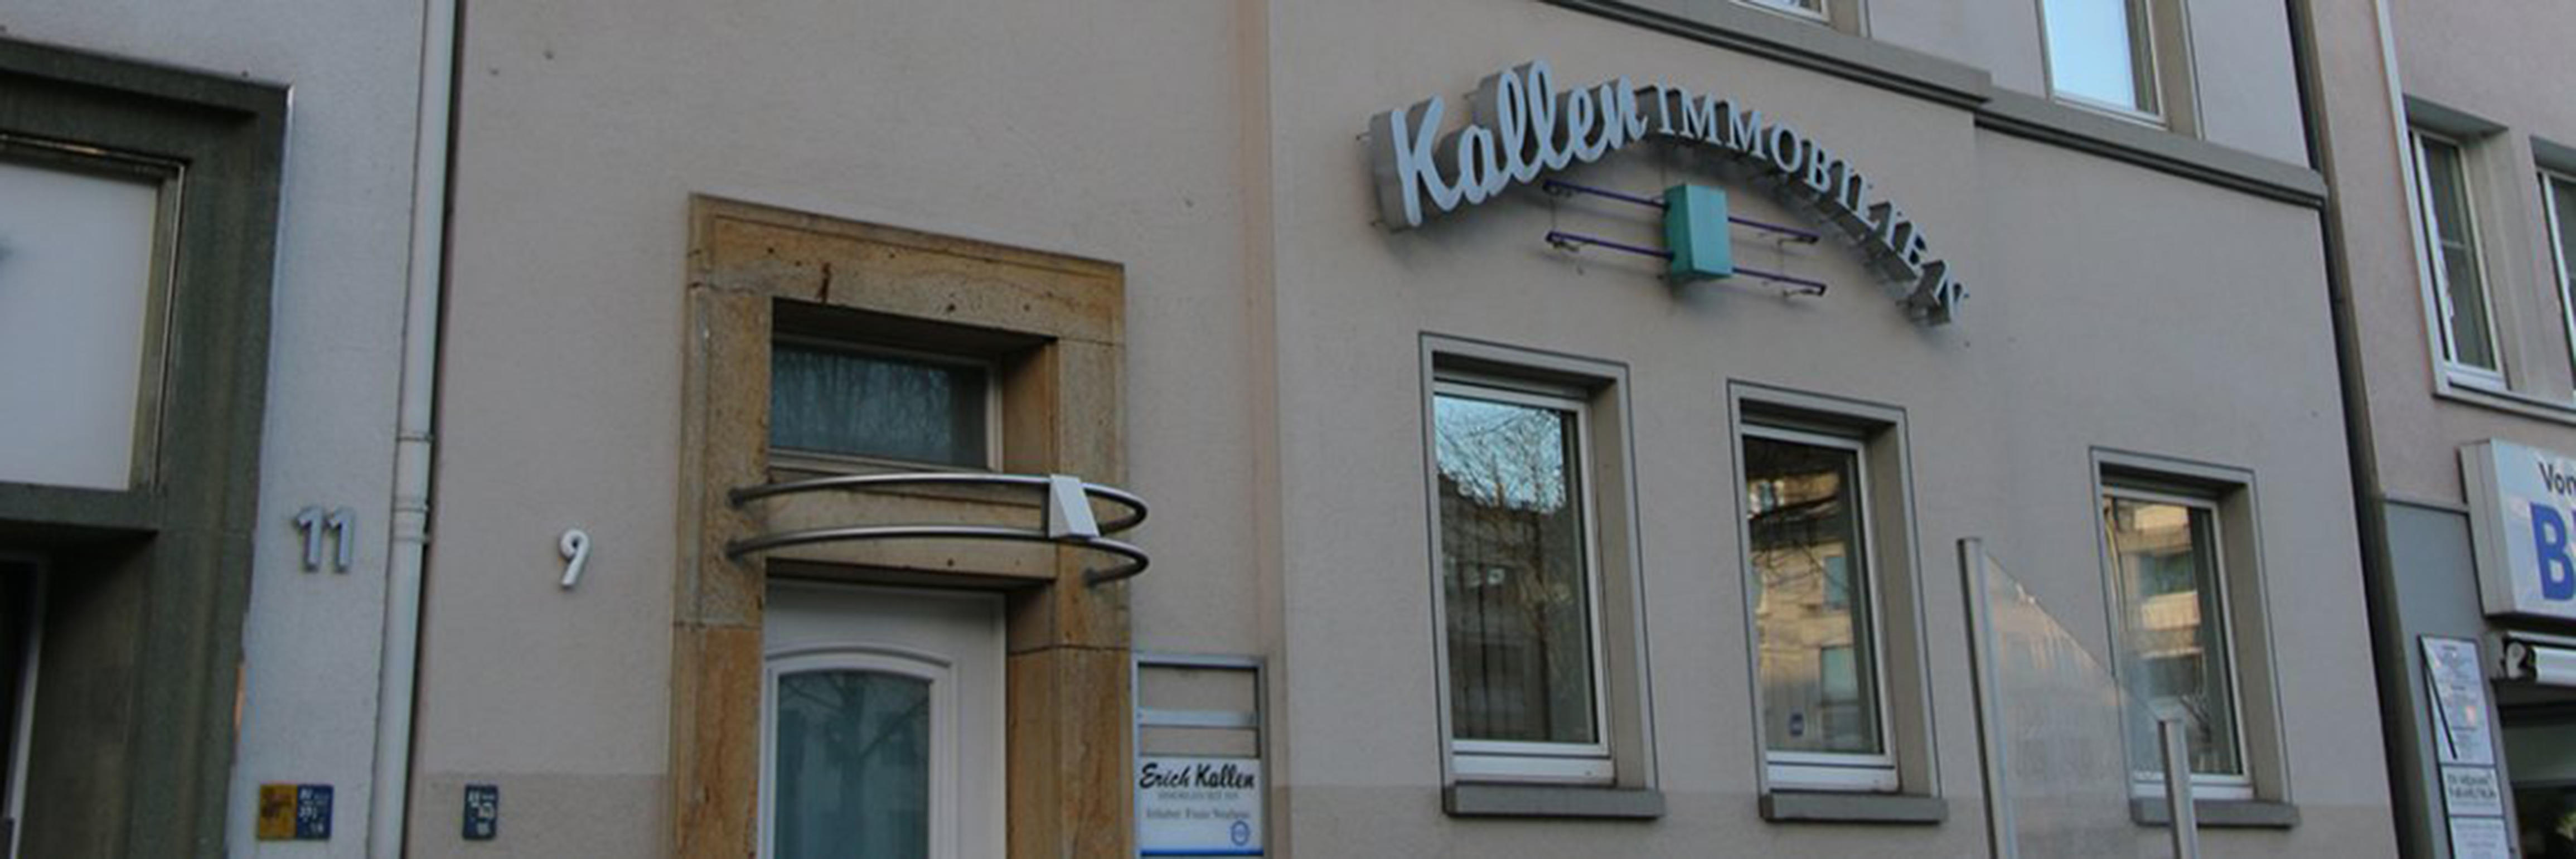 Erich Kallen Immobilien e. K., Beurhausstraße 9 in Dortmund